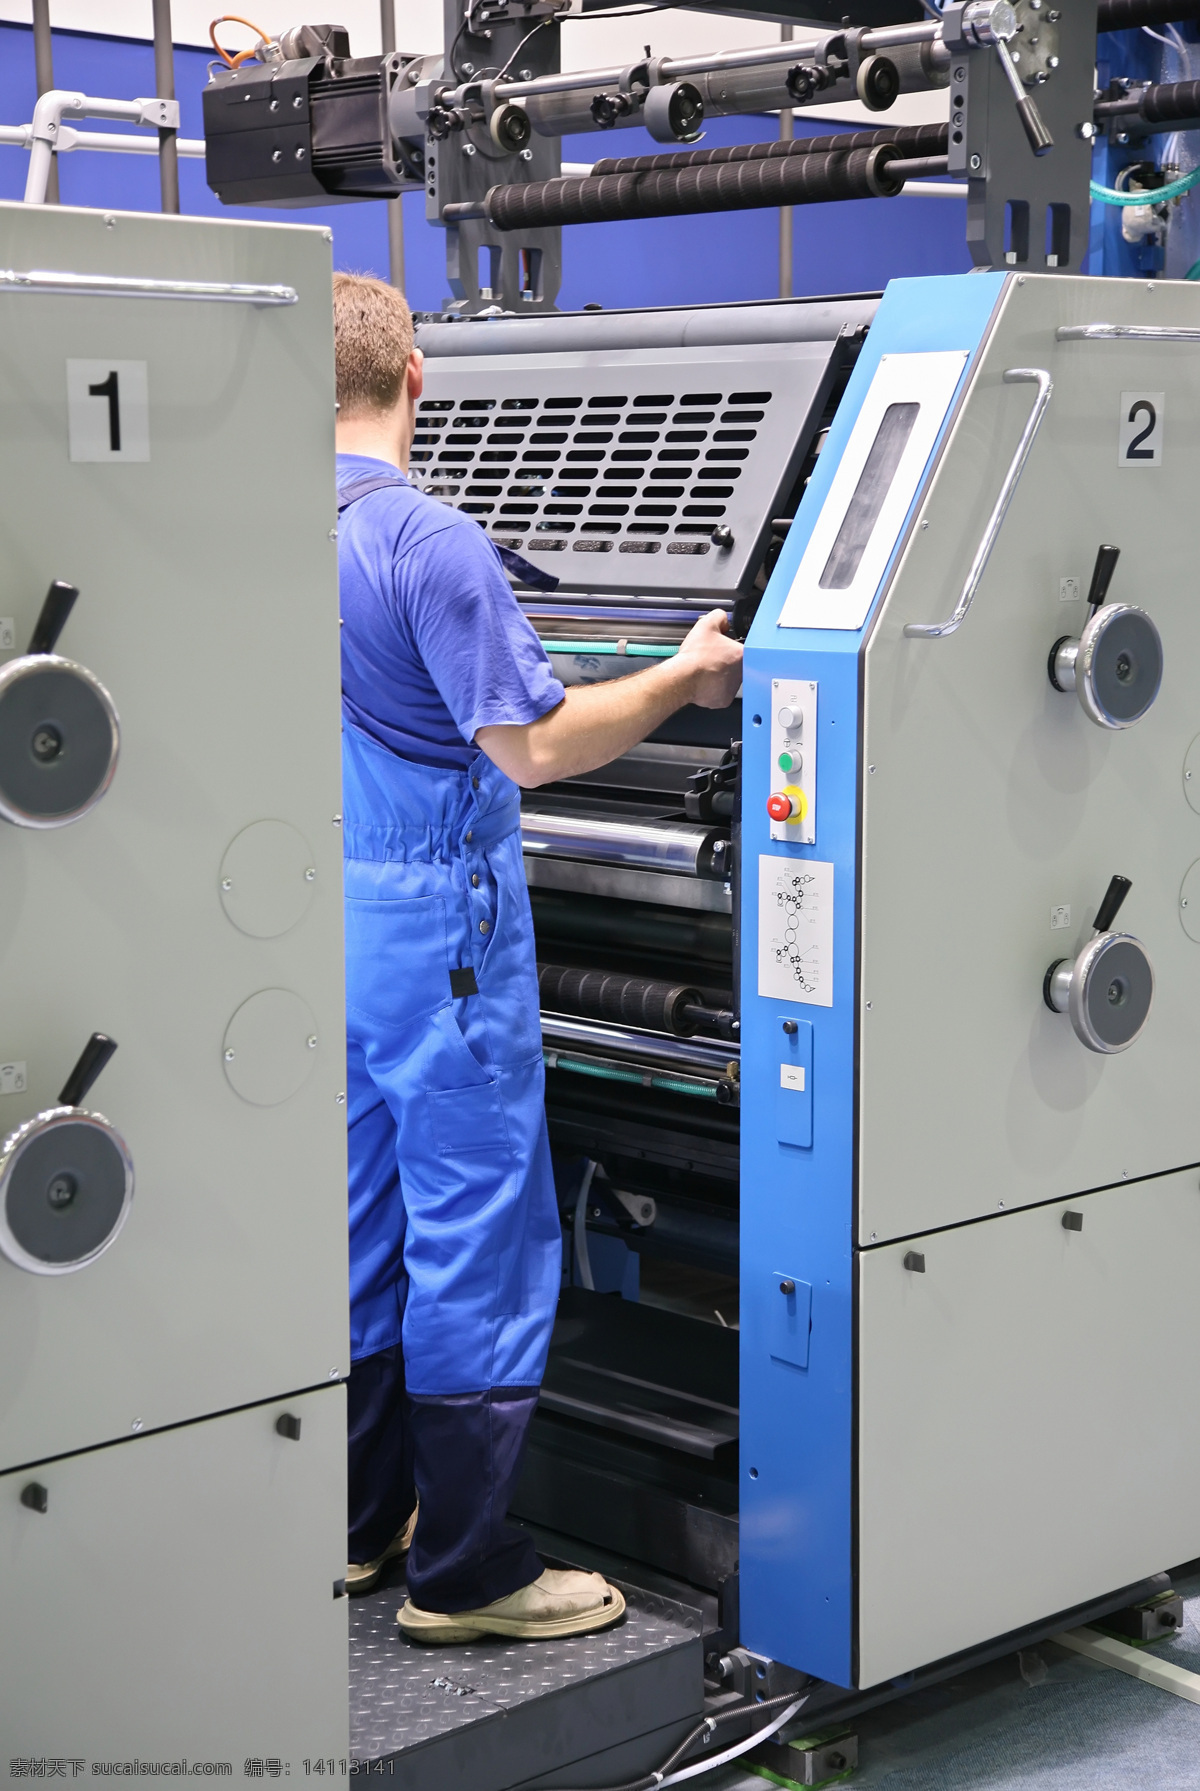 印刷厂 印刷机 彩印 彩色印刷机 胶印机 工人 工业生产 现代科技